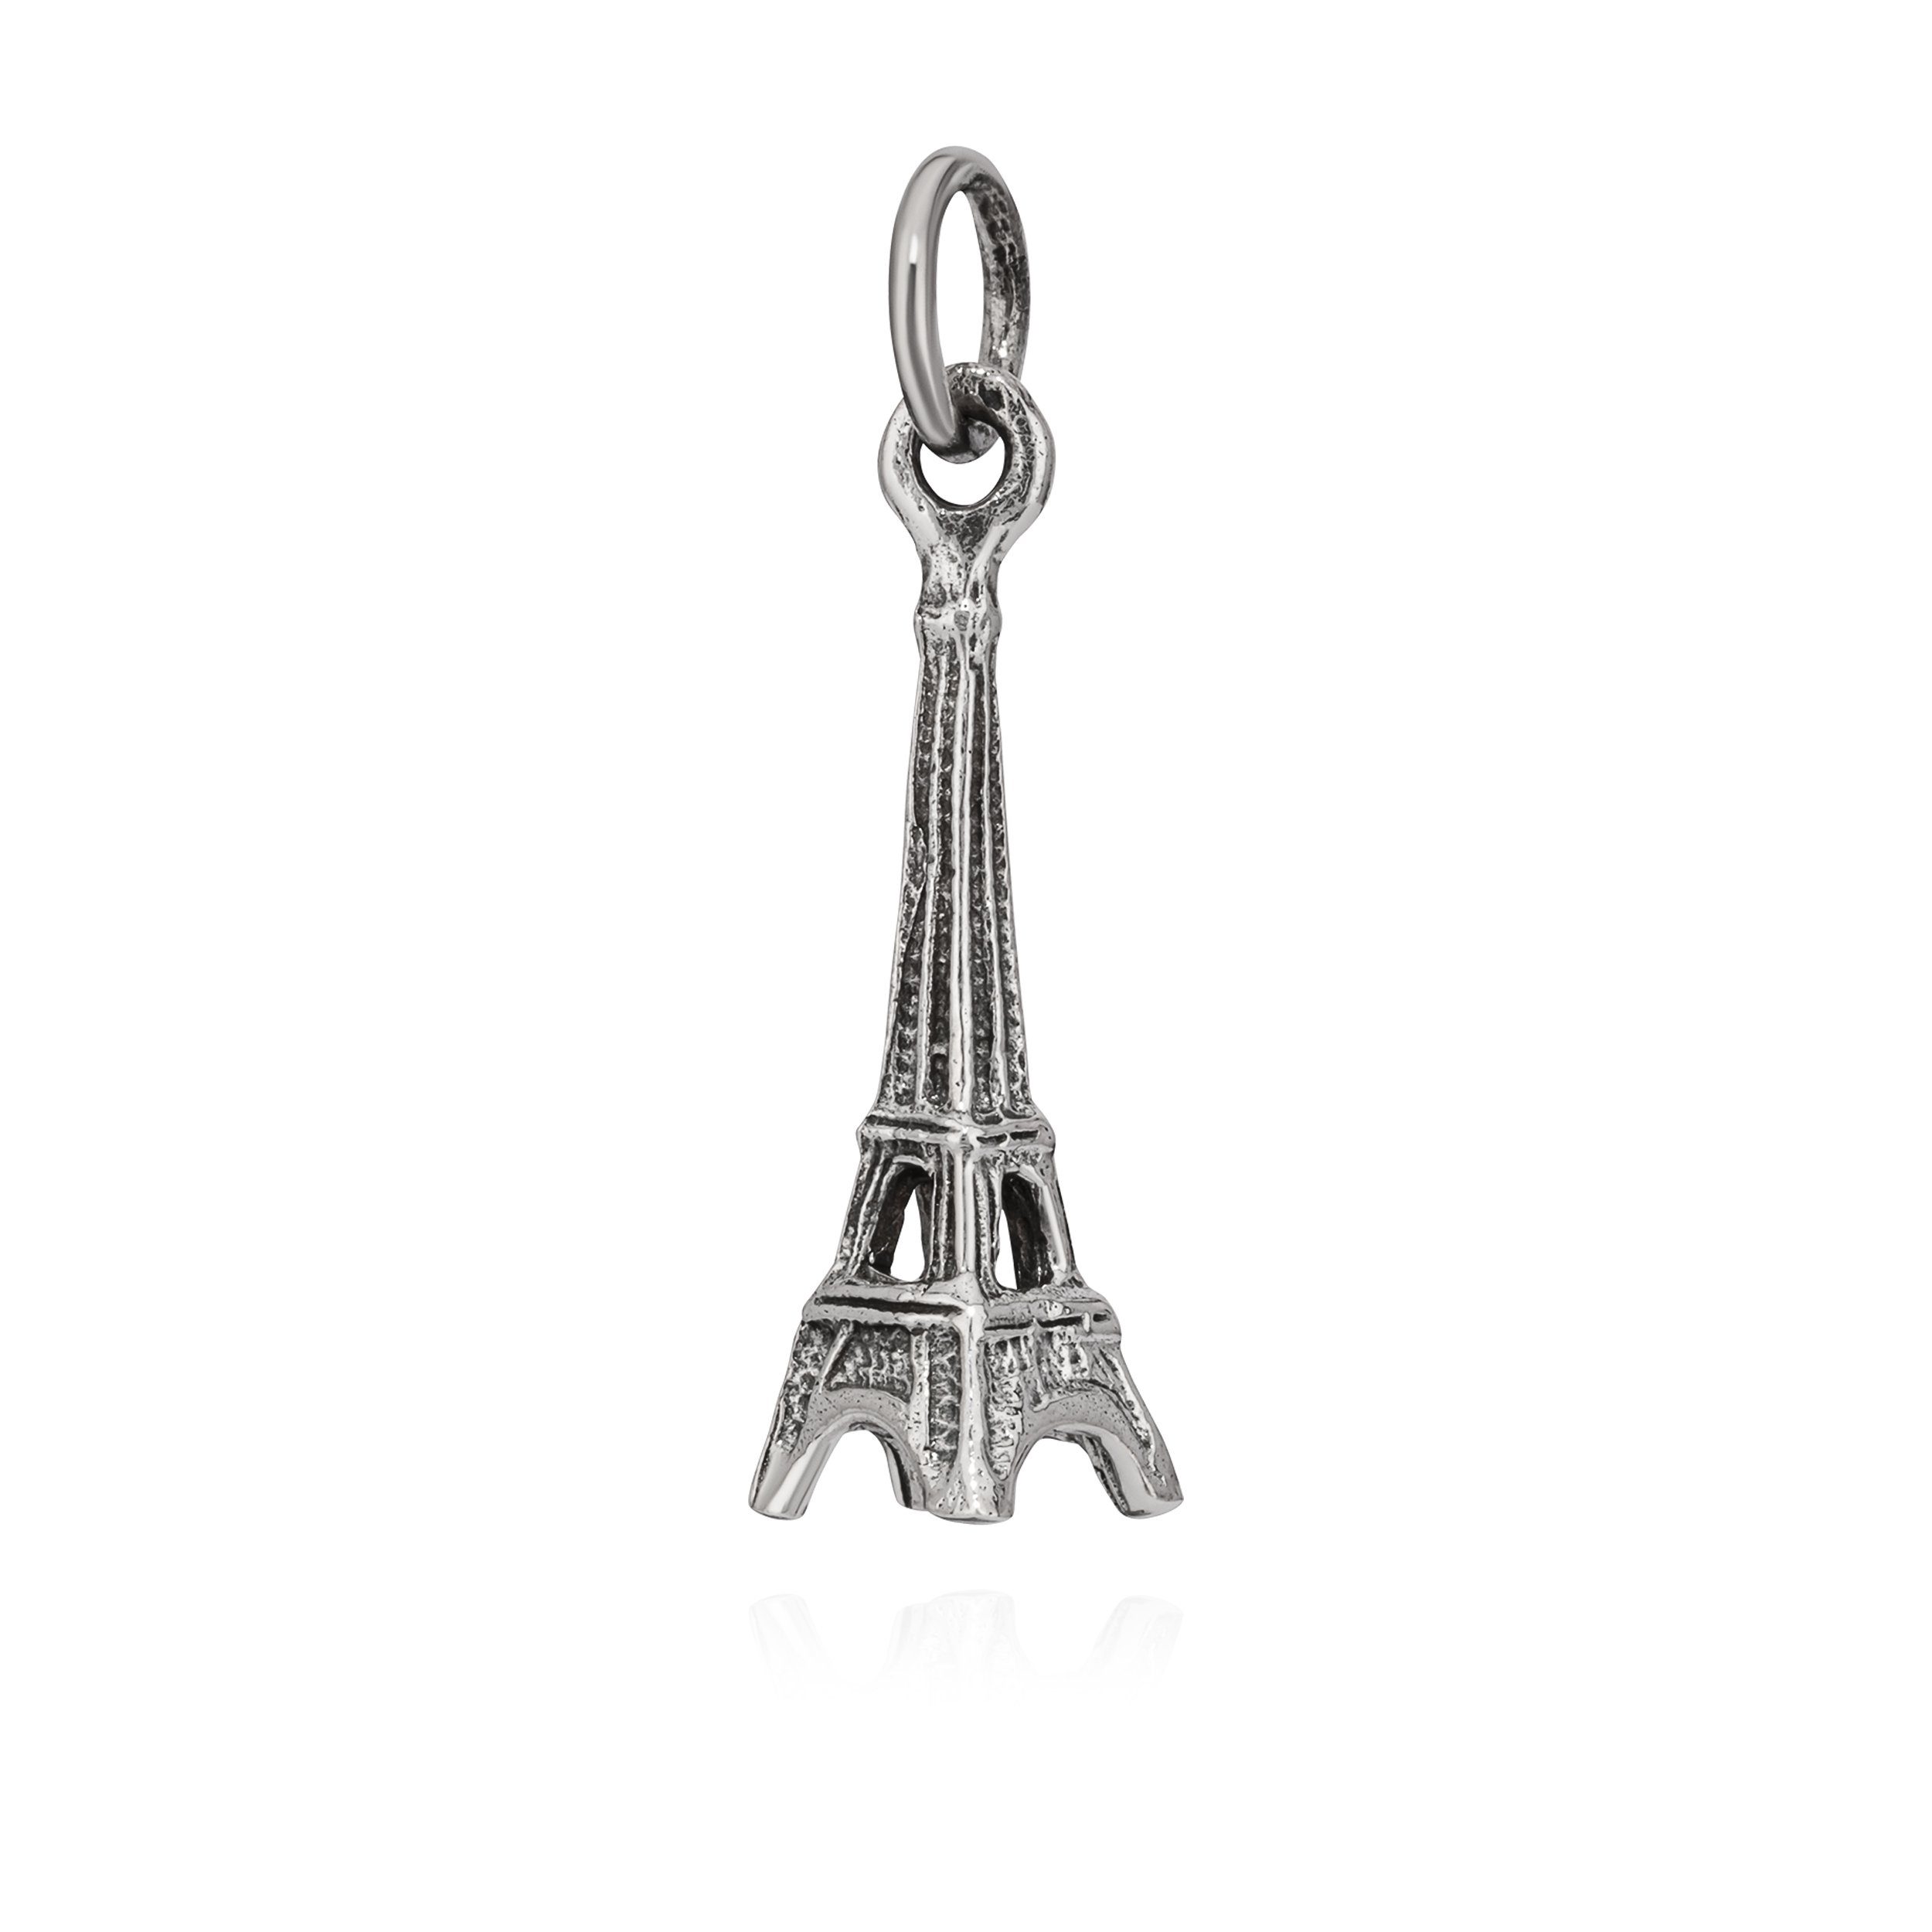 NKlaus Kettenanhänger Kettenanhänger Eiffelturm 925 Silber 24x17mm Silbe, 925 Silber rhodiniert